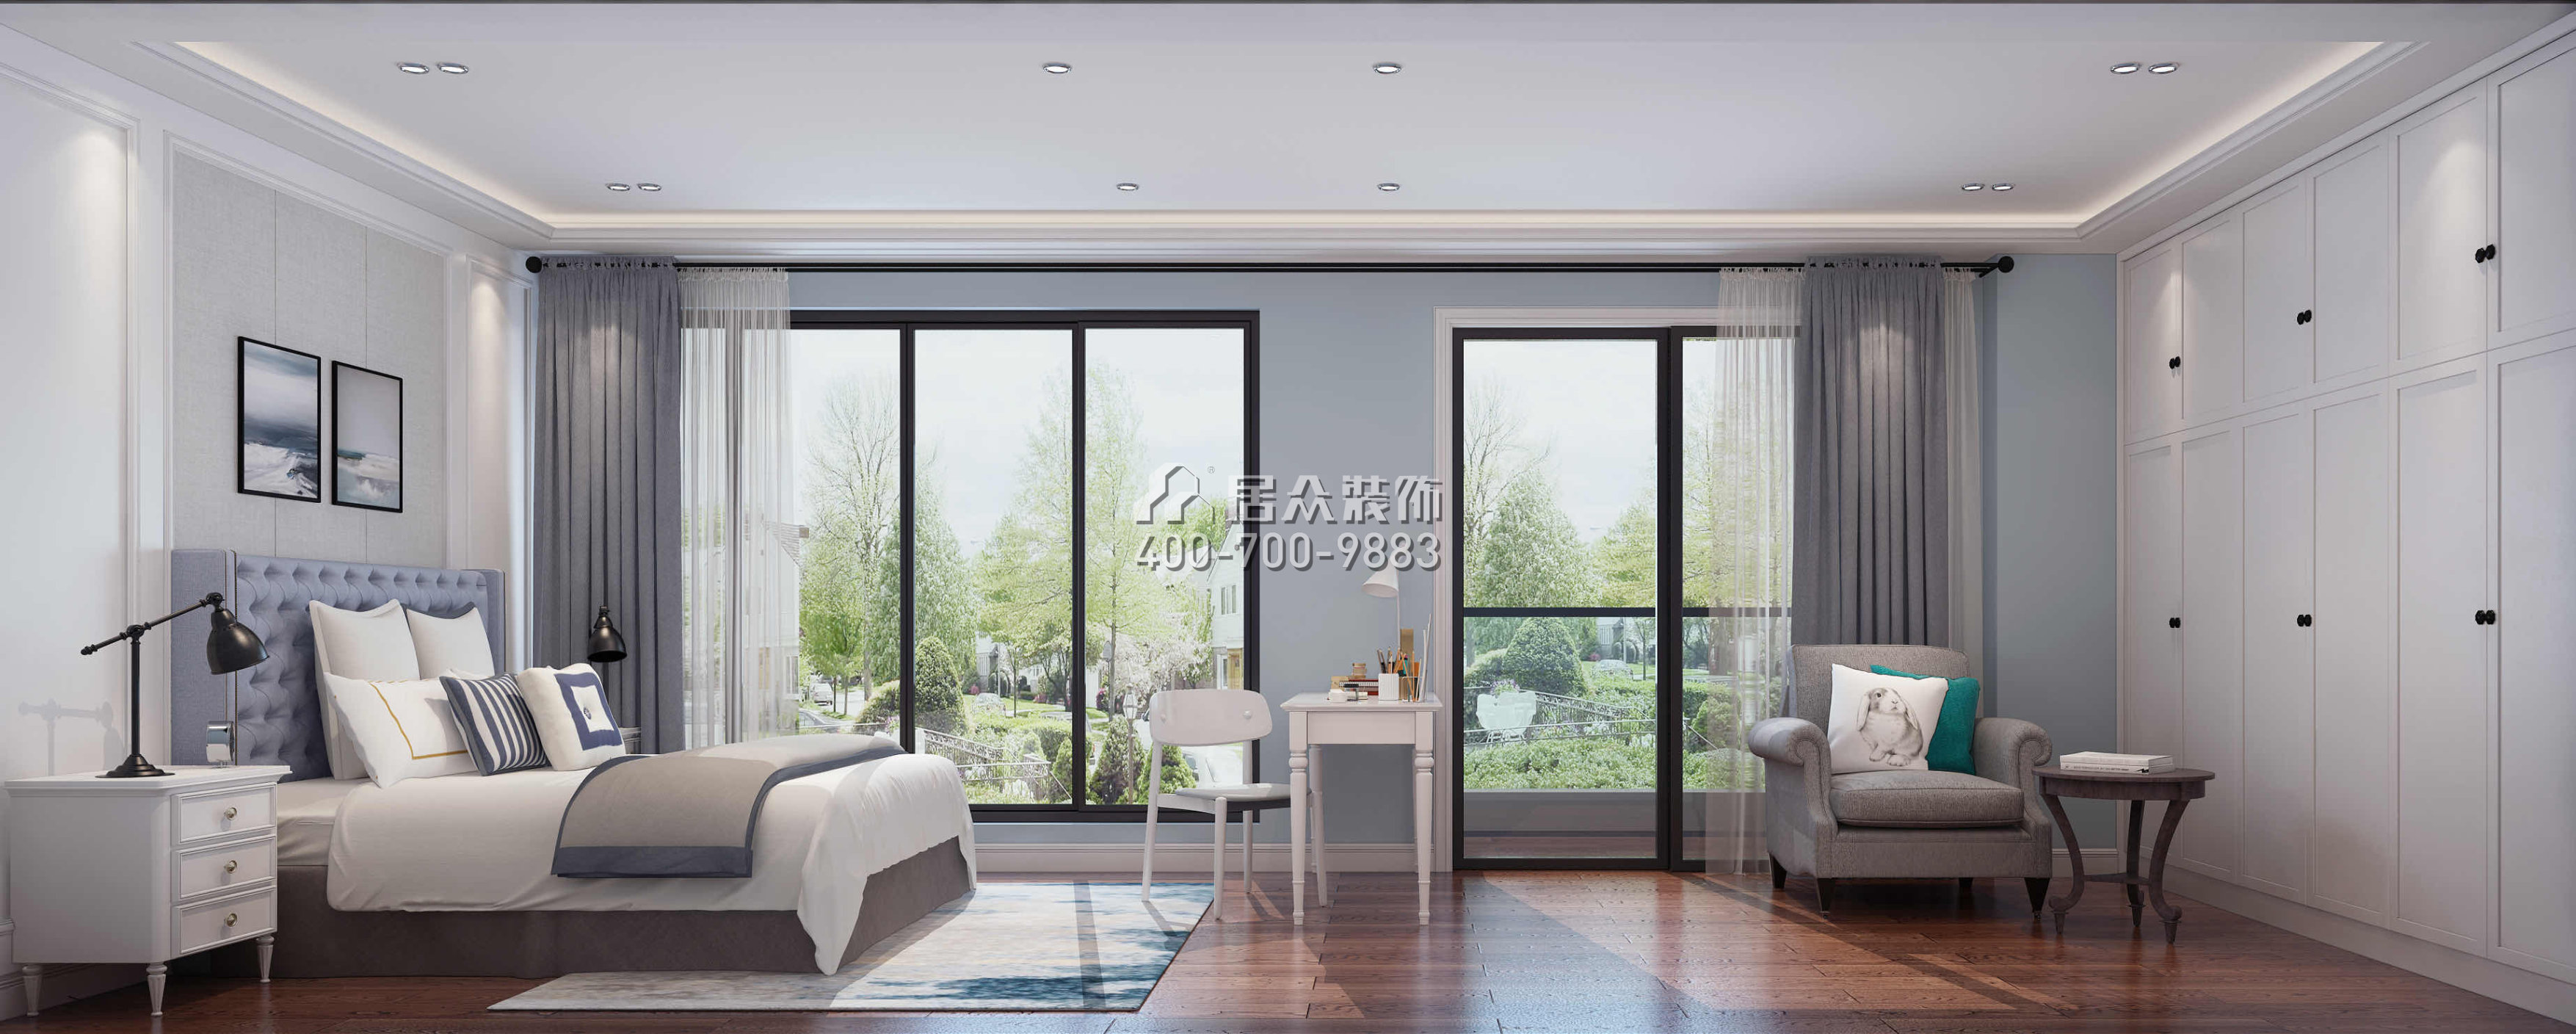 華發新城480平方米中式風格別墅戶型臥室裝修效果圖